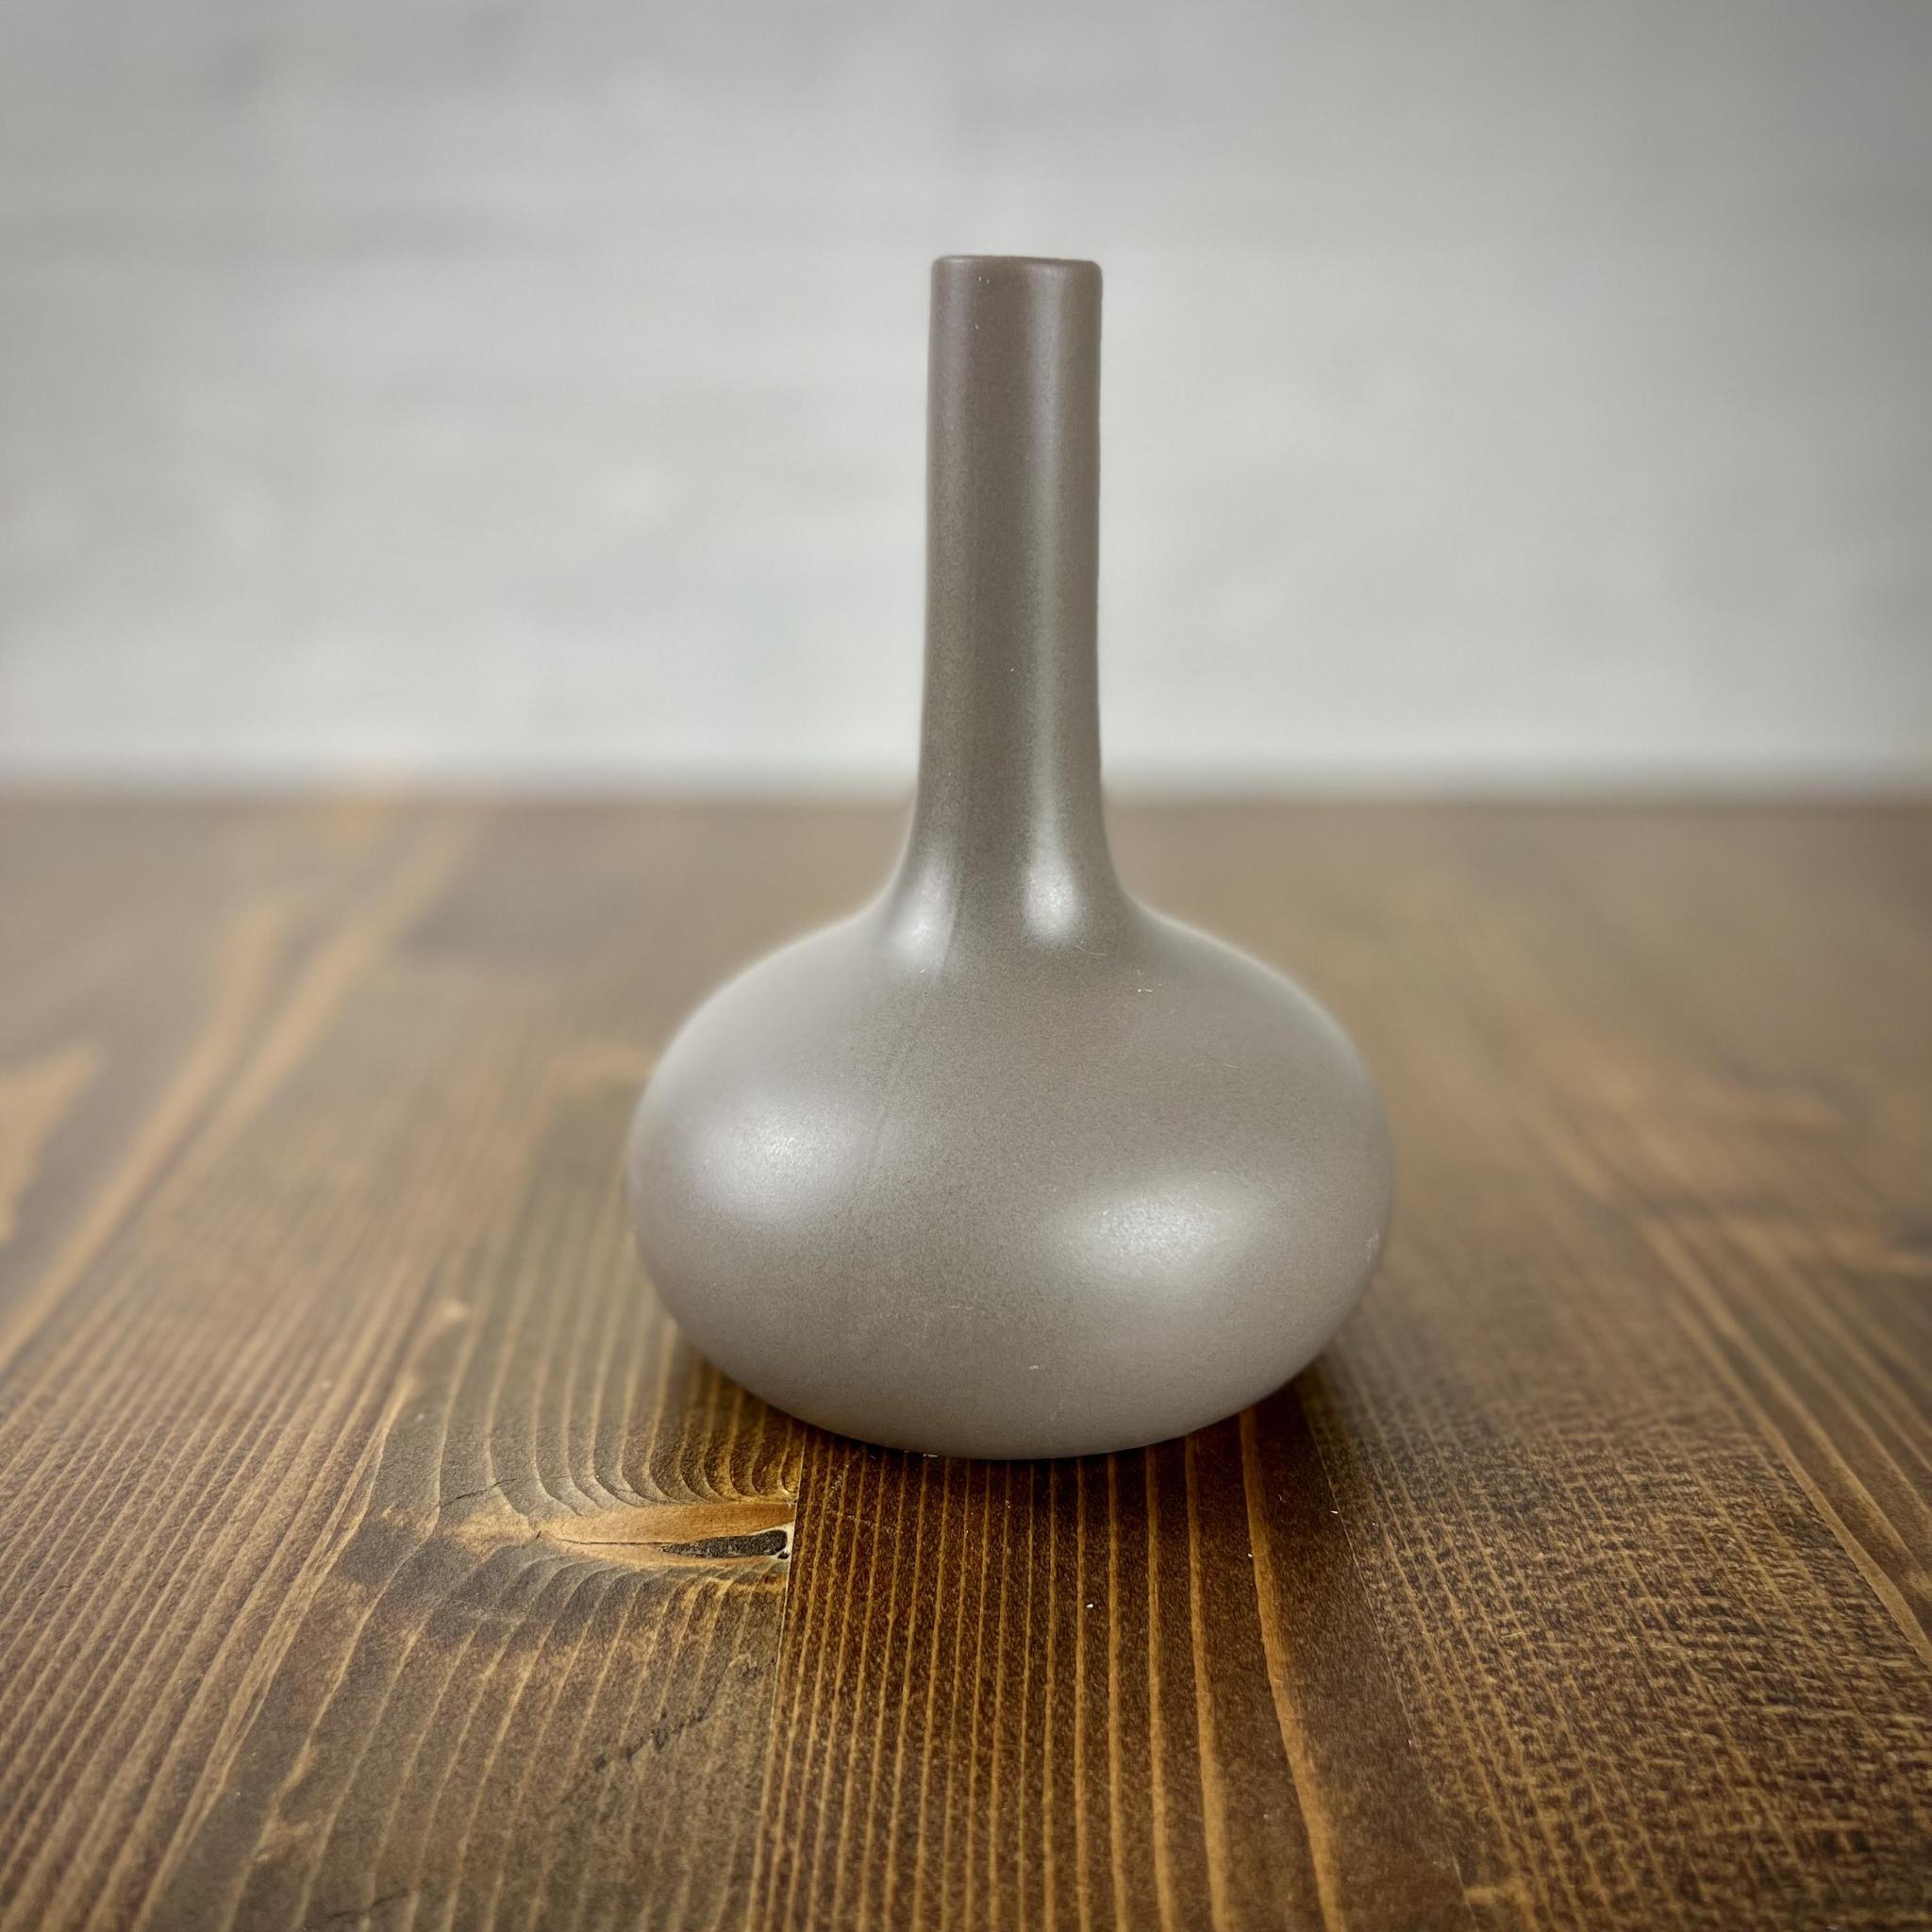 Gray Ceramic Eastern Bottle Vase - 6"H